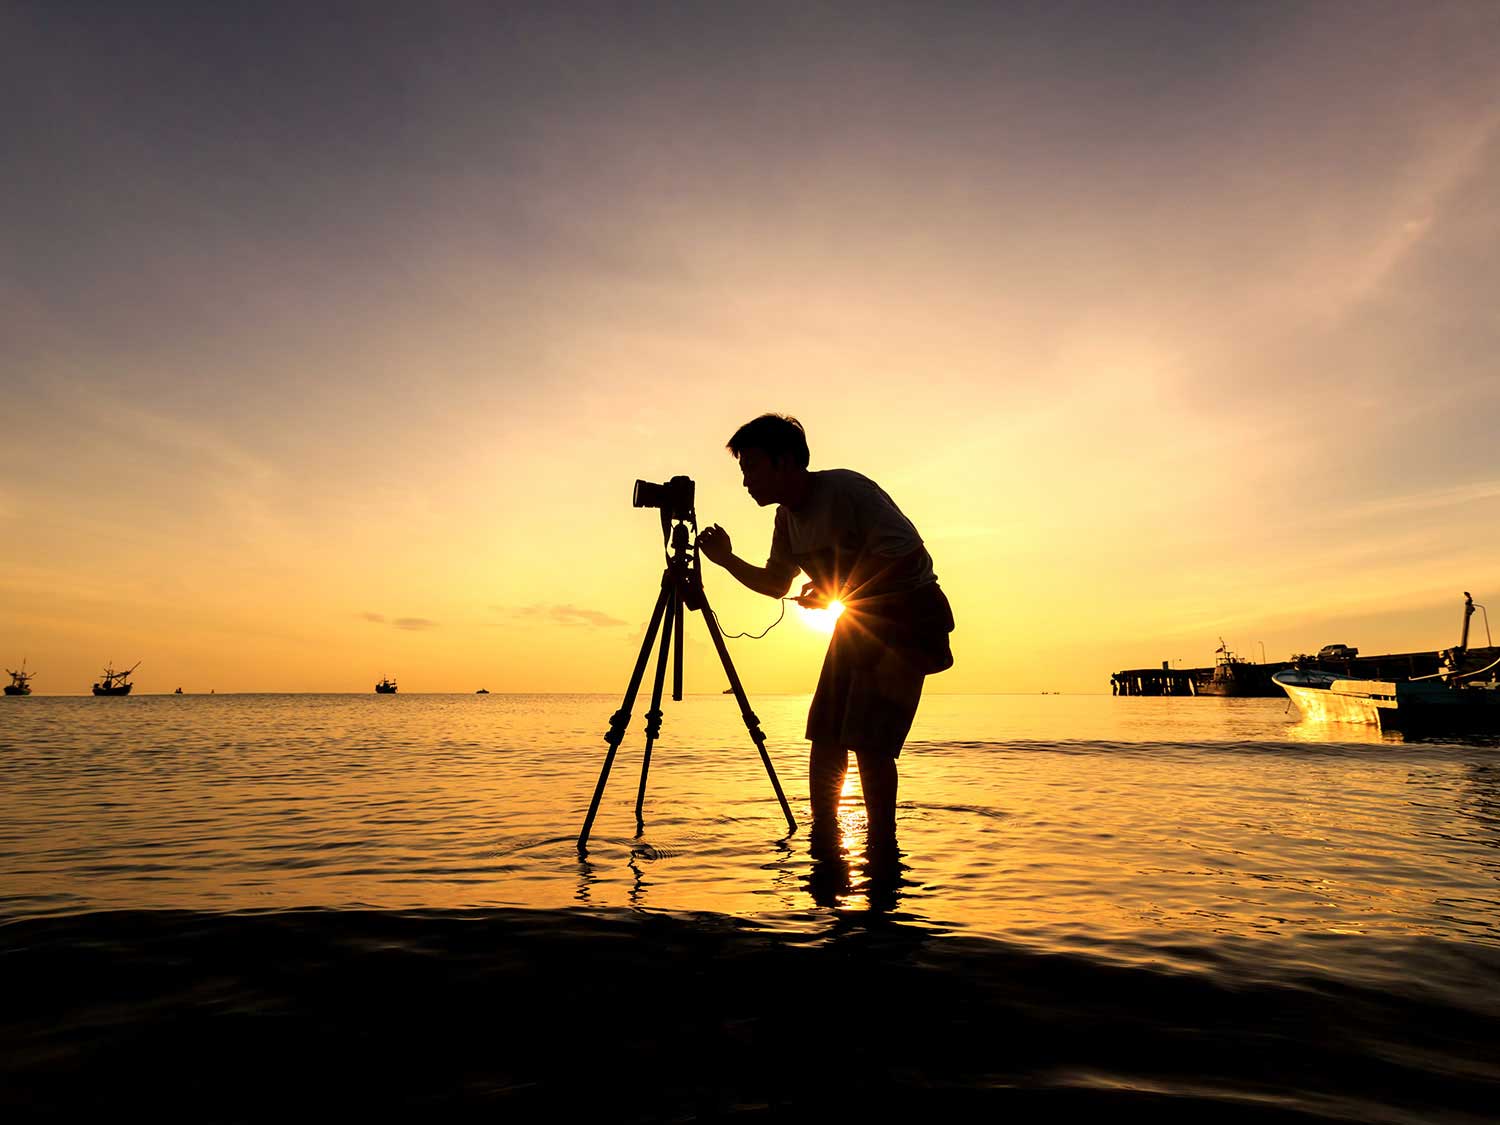 Man taking photos on beach at sunset.